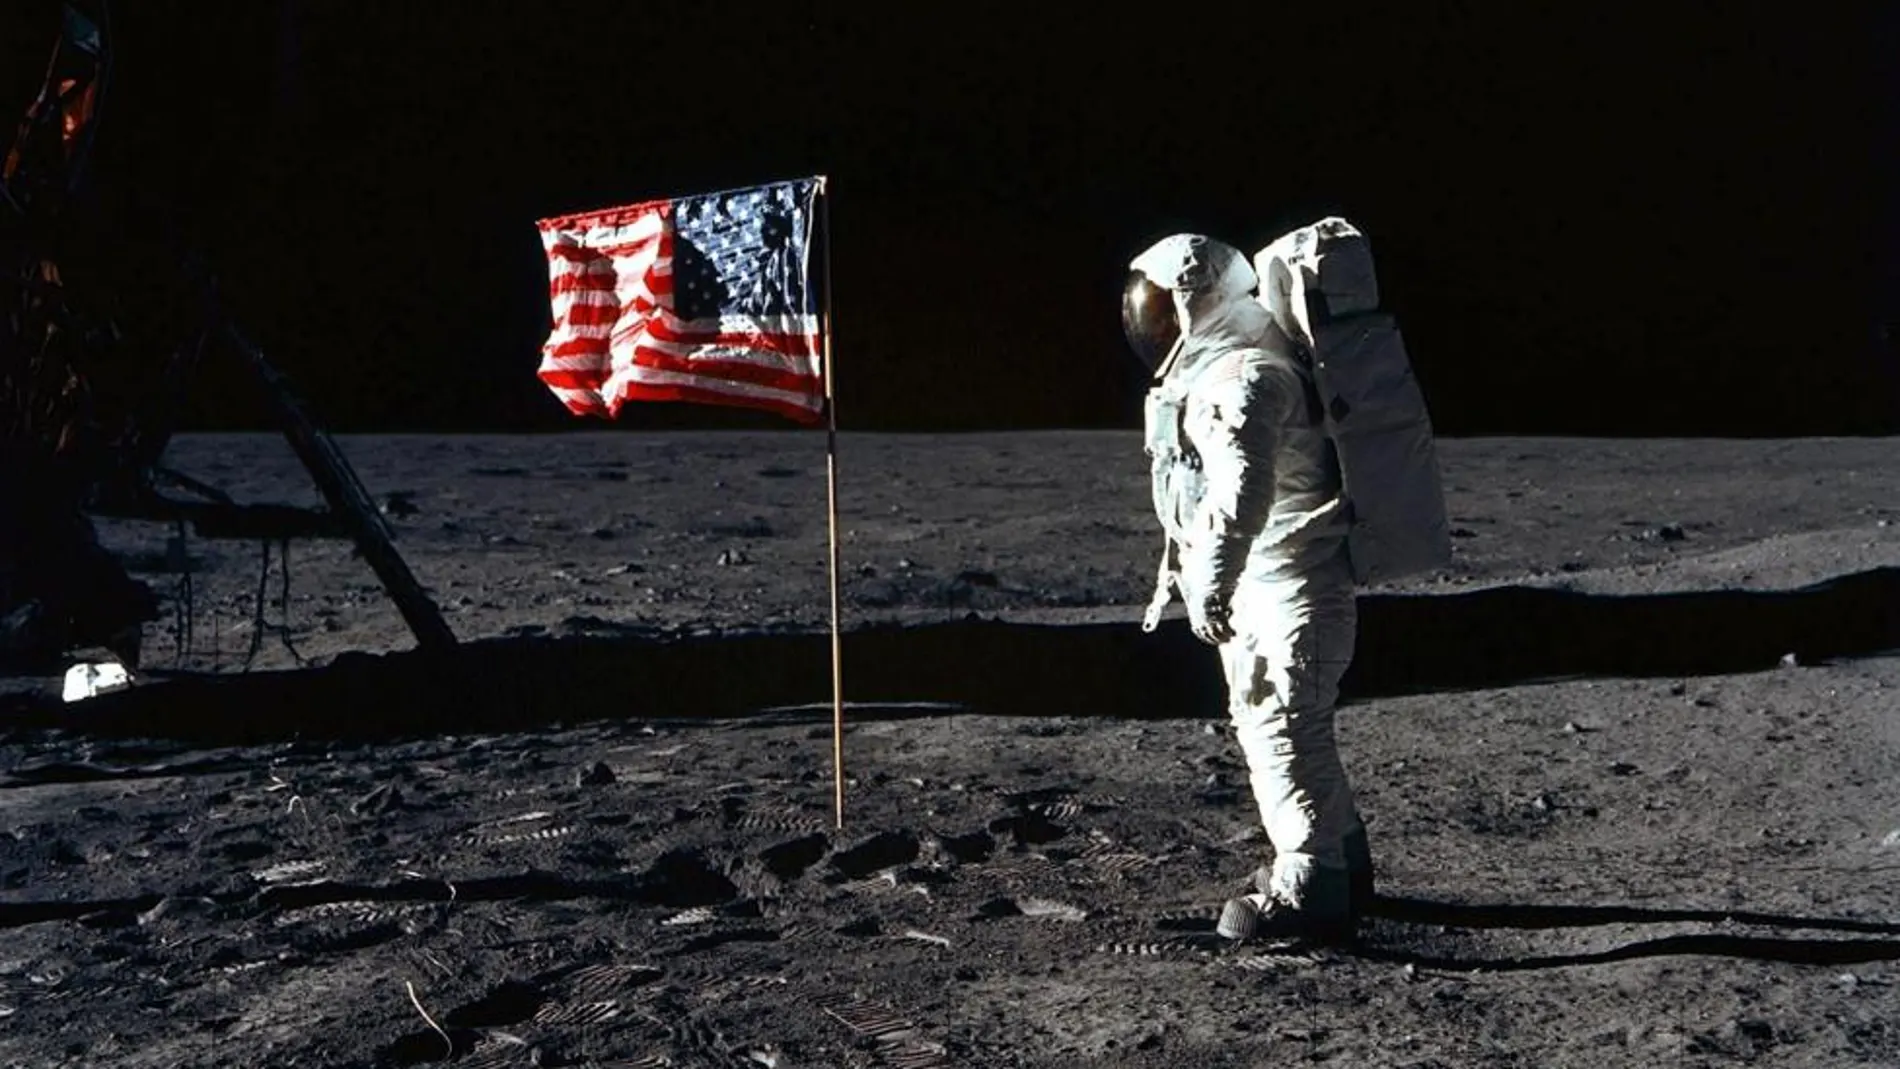 El primero en pisar la superficie lunar es Neil Armstrong y, poco después, lo hace Edwin Aldrin, mientras que Michael Collins permanece en la nave. En la foto, Aldrin posa para una fotografía junto a la bandera estadounidense, 20 de julio 1969.